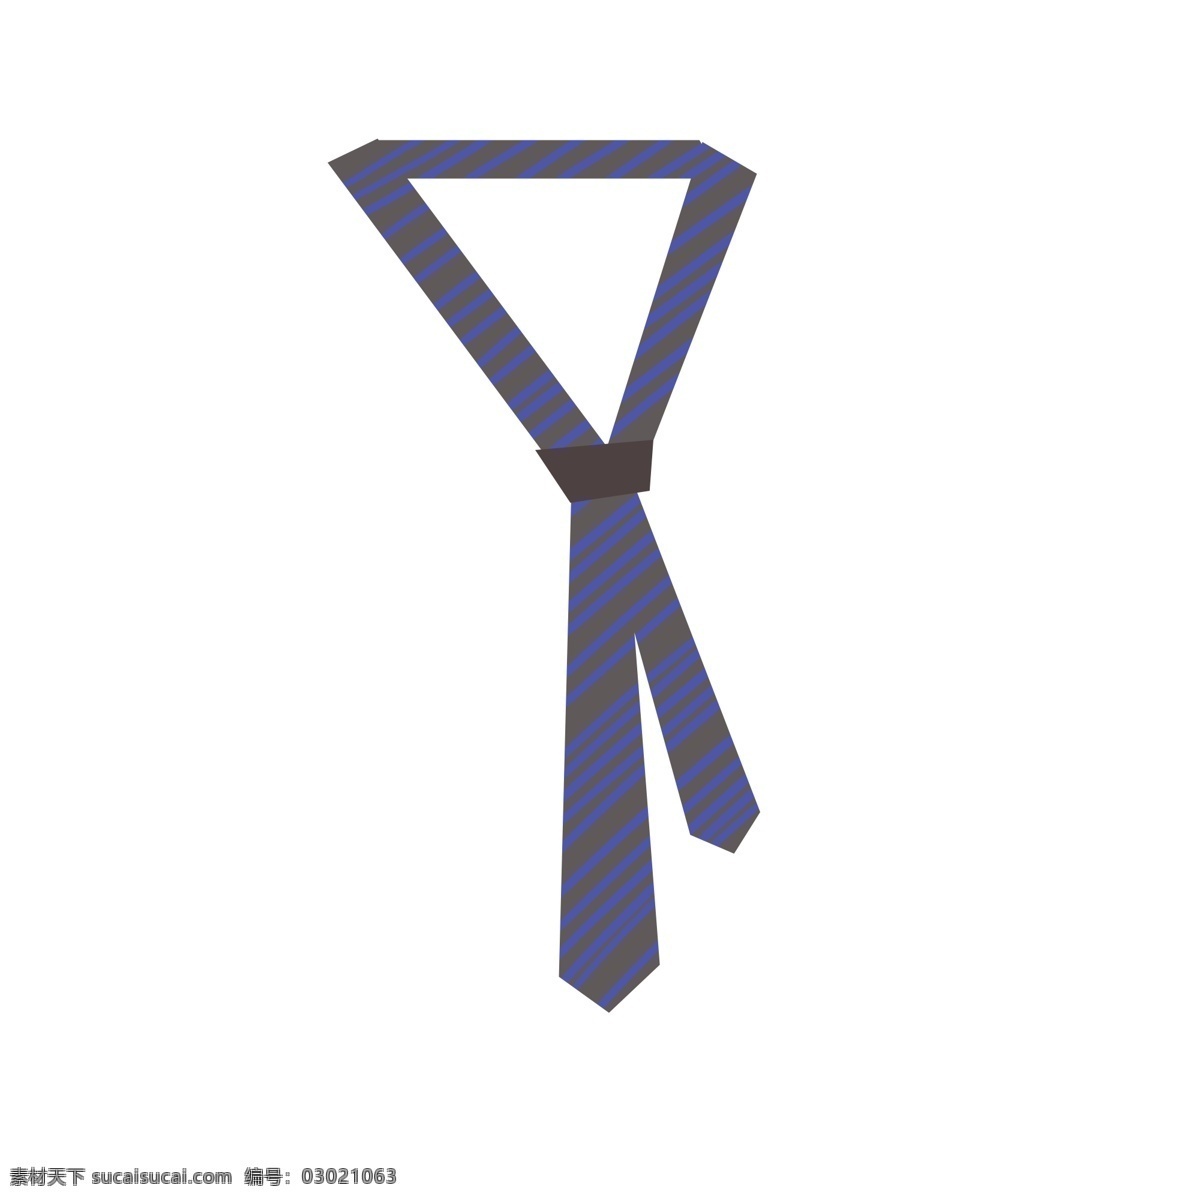 蓝色领带 蓝色 领带 卡通 简洁 优雅 礼仪